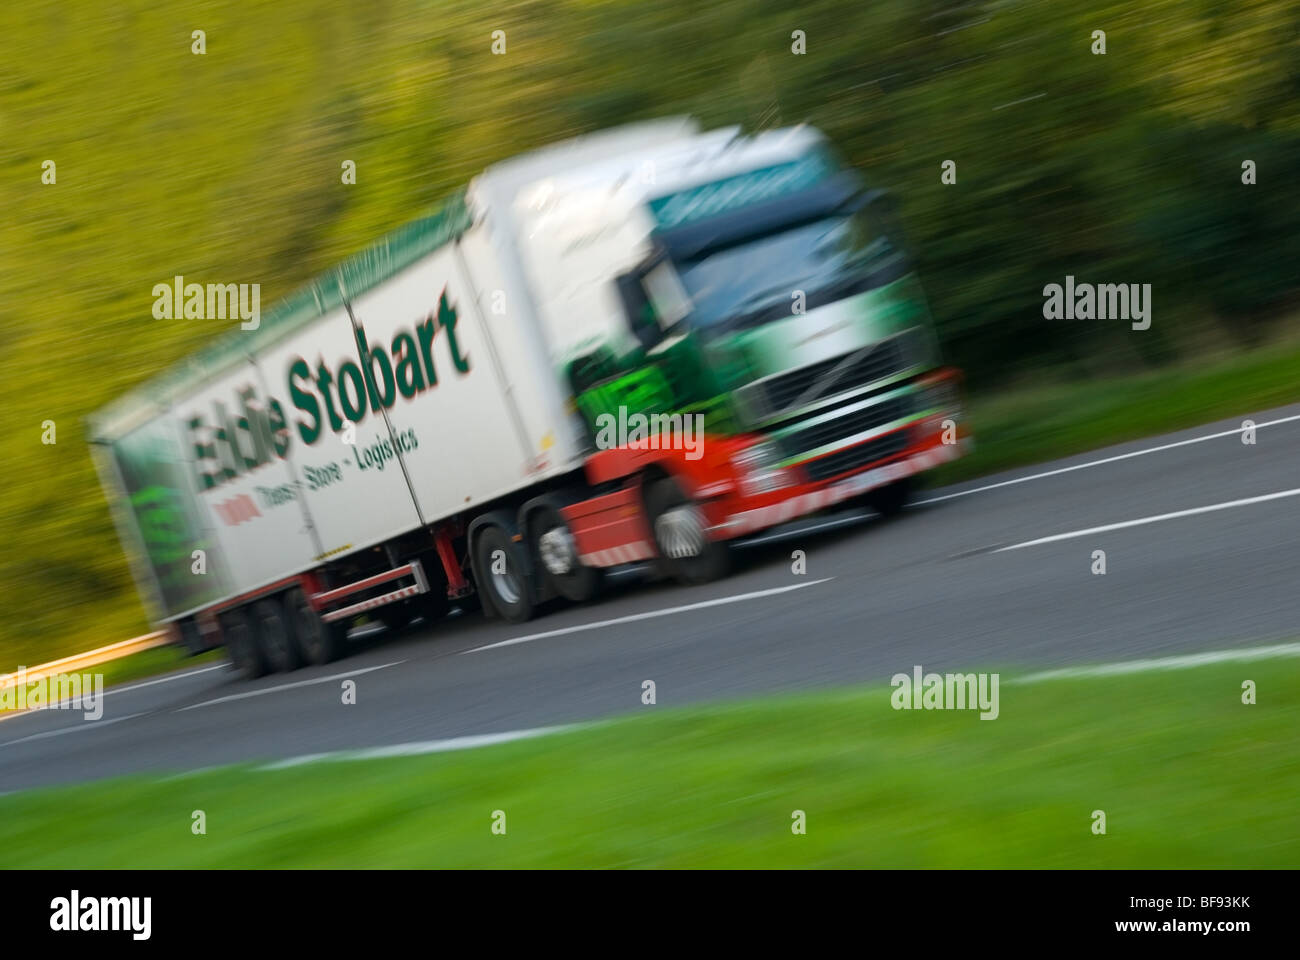 eddie-stobart-truck-with-motion-blur-BF9